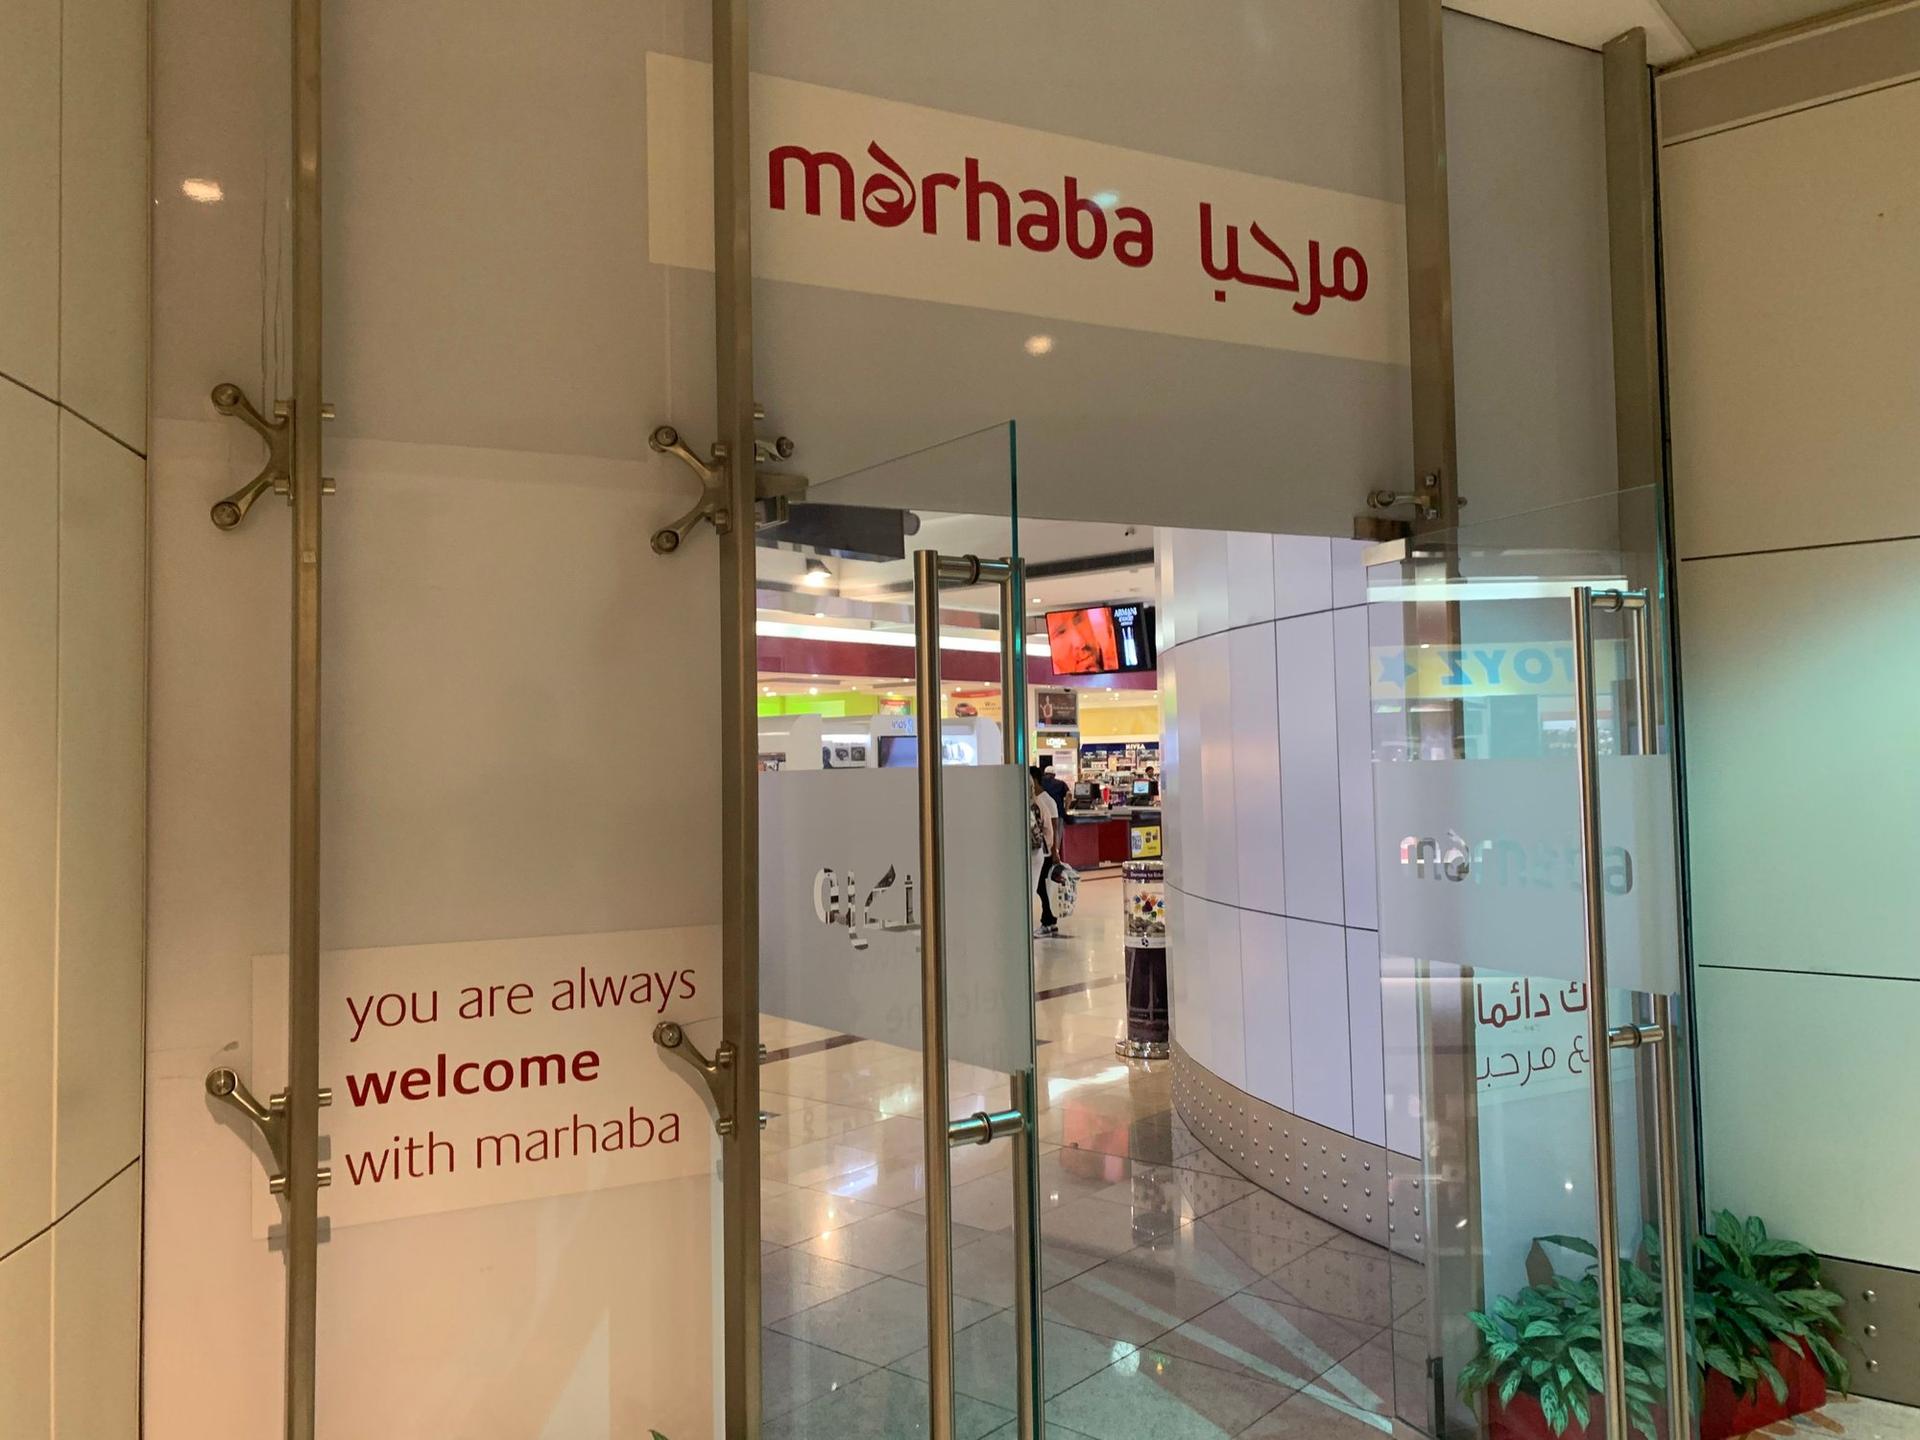 Marhaba Lounge image 33 of 44